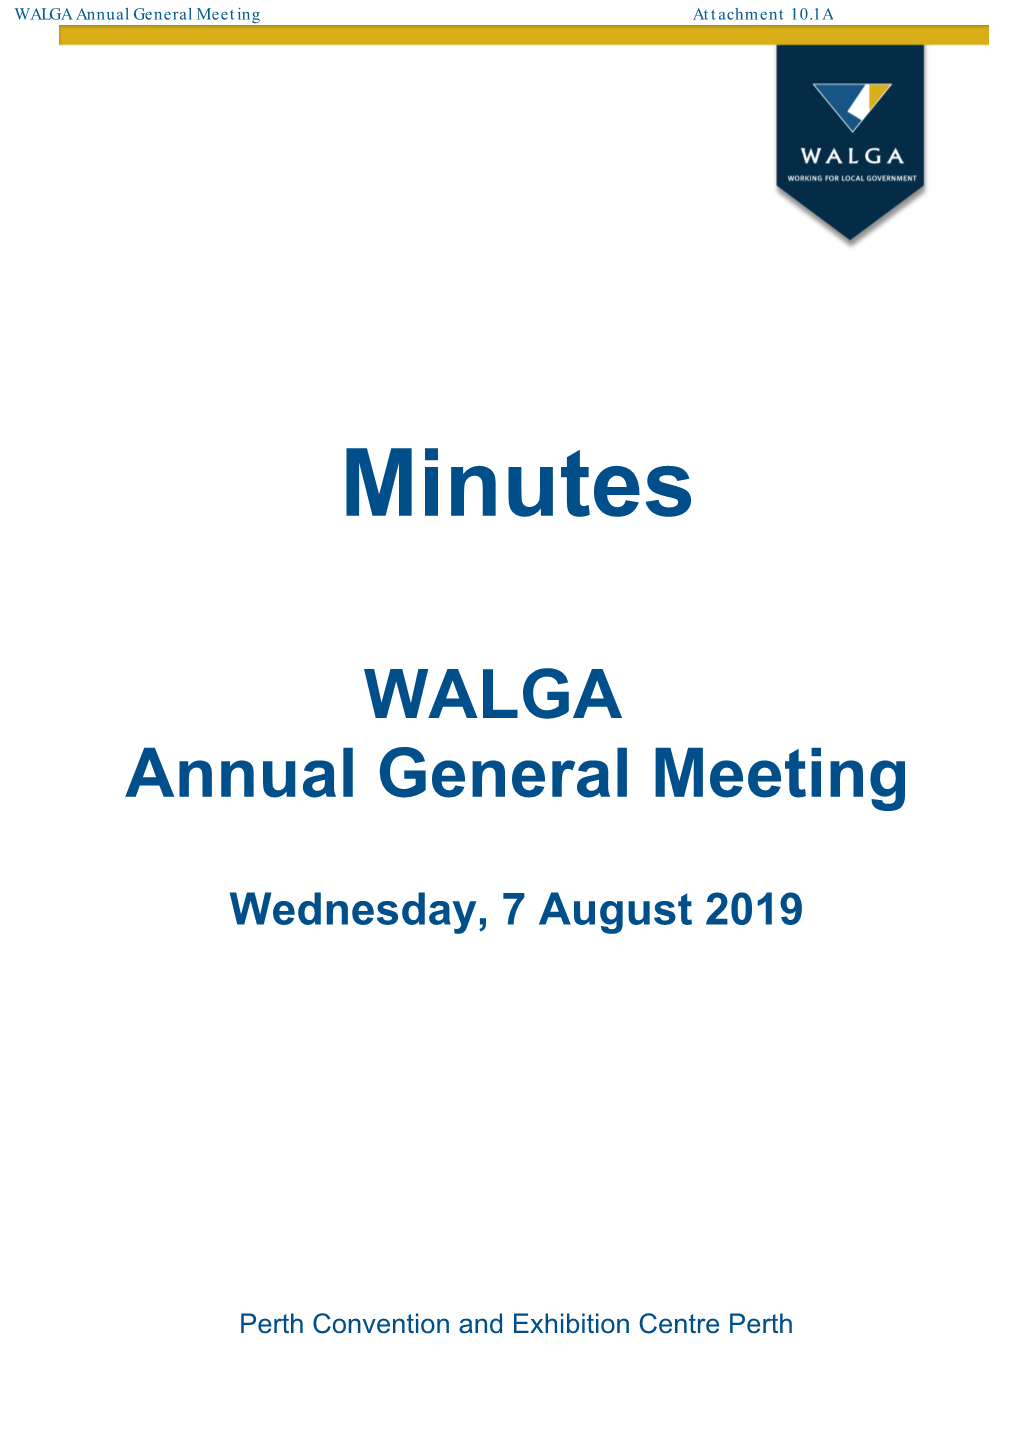 WALGA Annual General Meeting